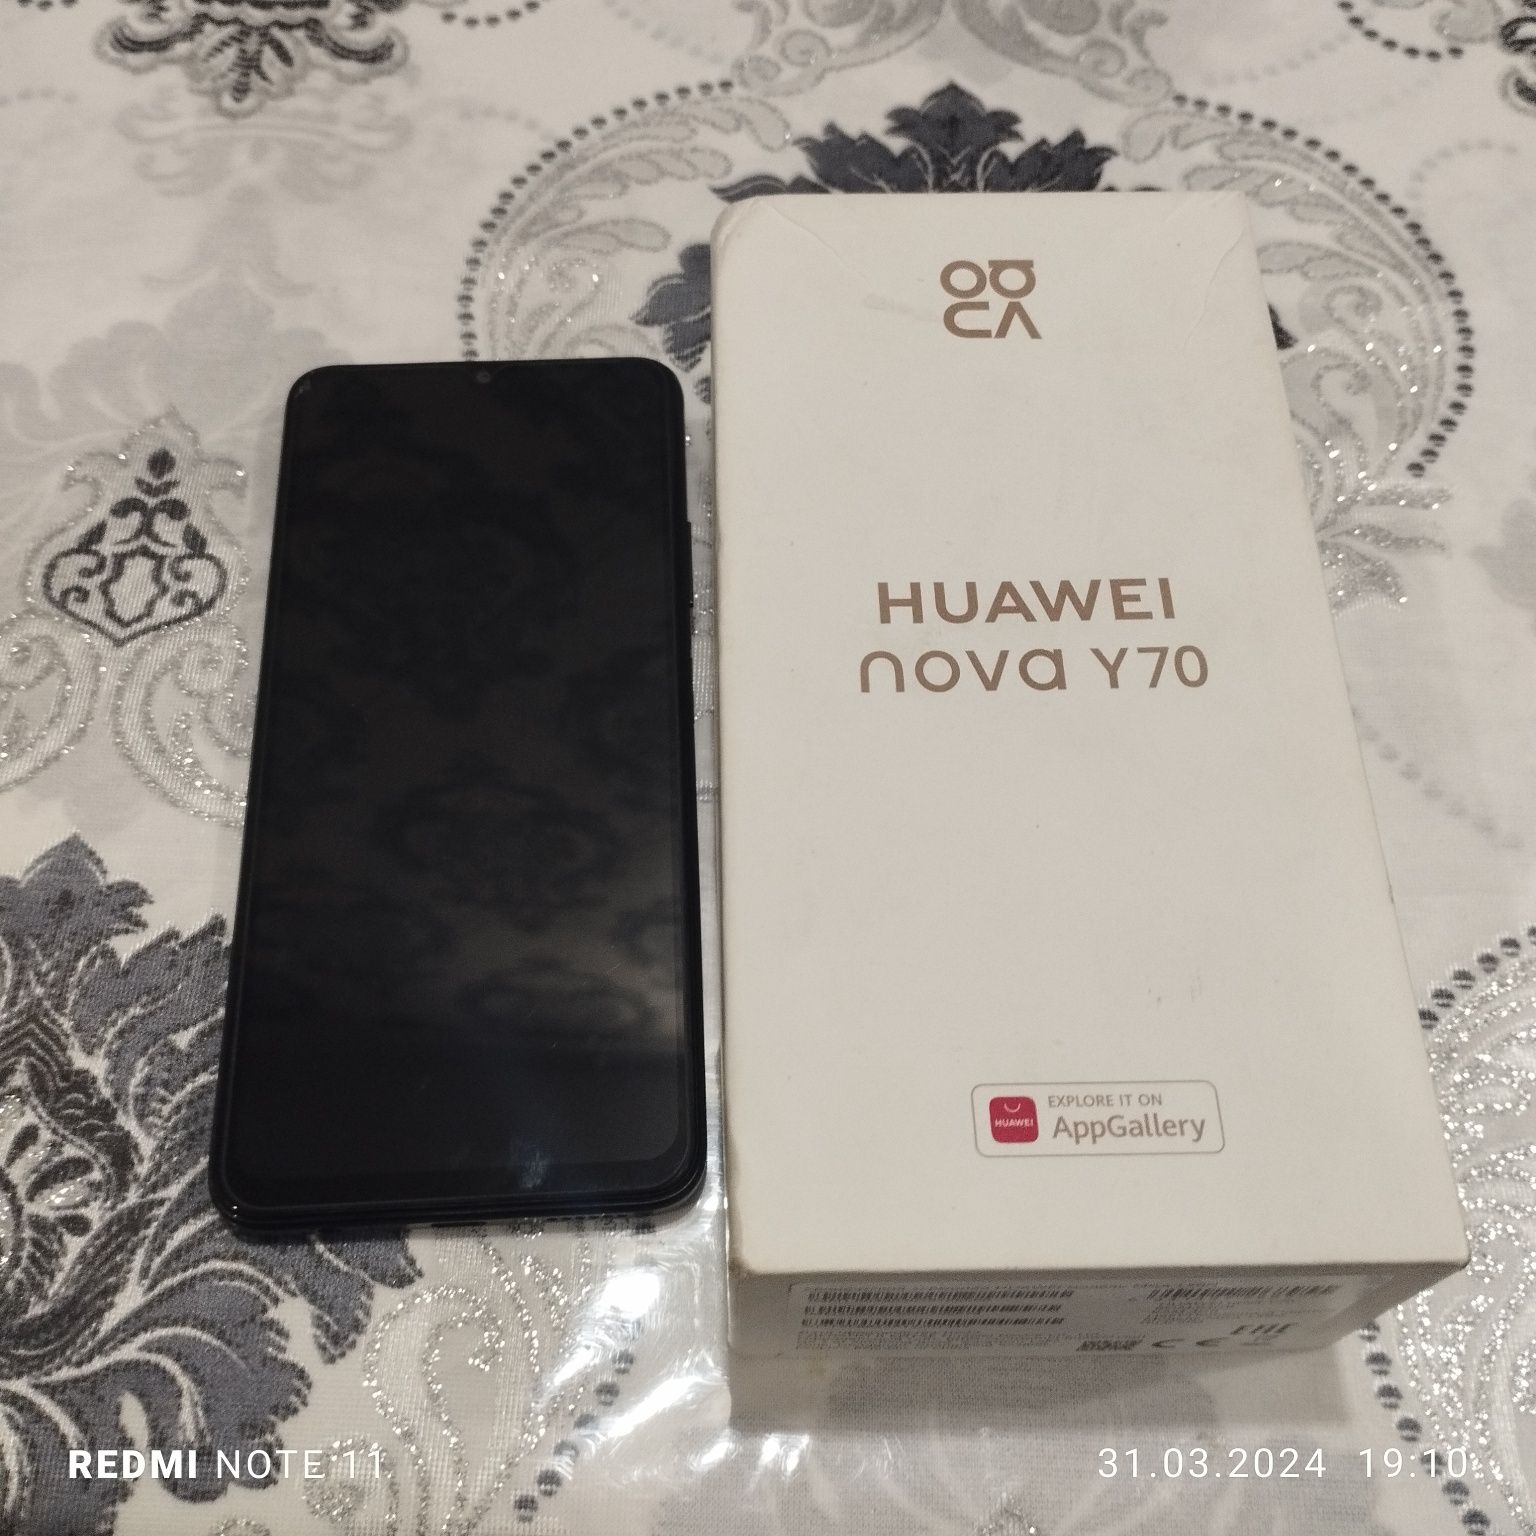 Huawei nova Y70 ideal